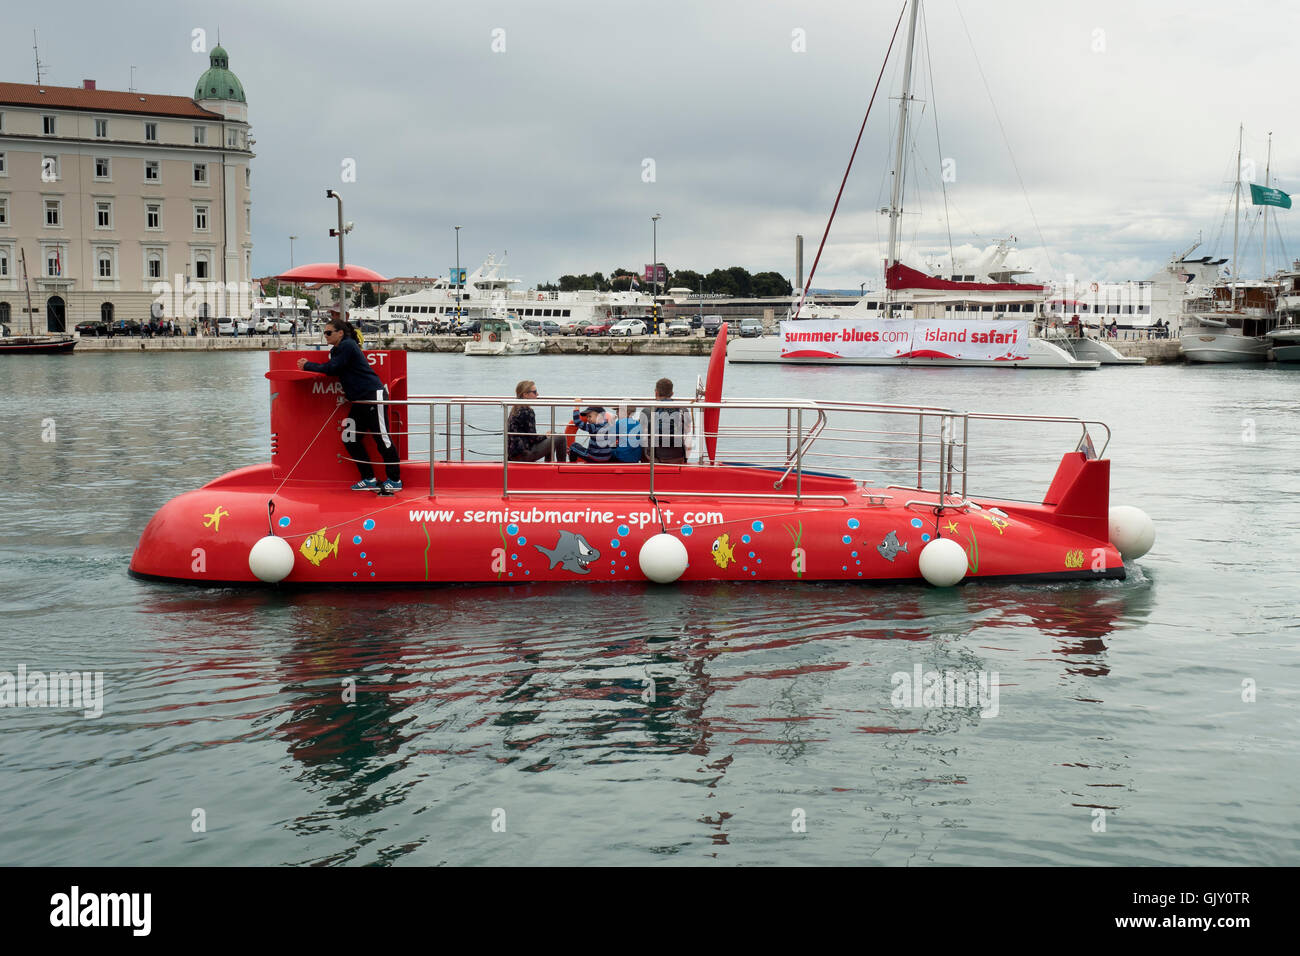 Submersible, Split, Croatie, la côte dalmate Banque D'Images